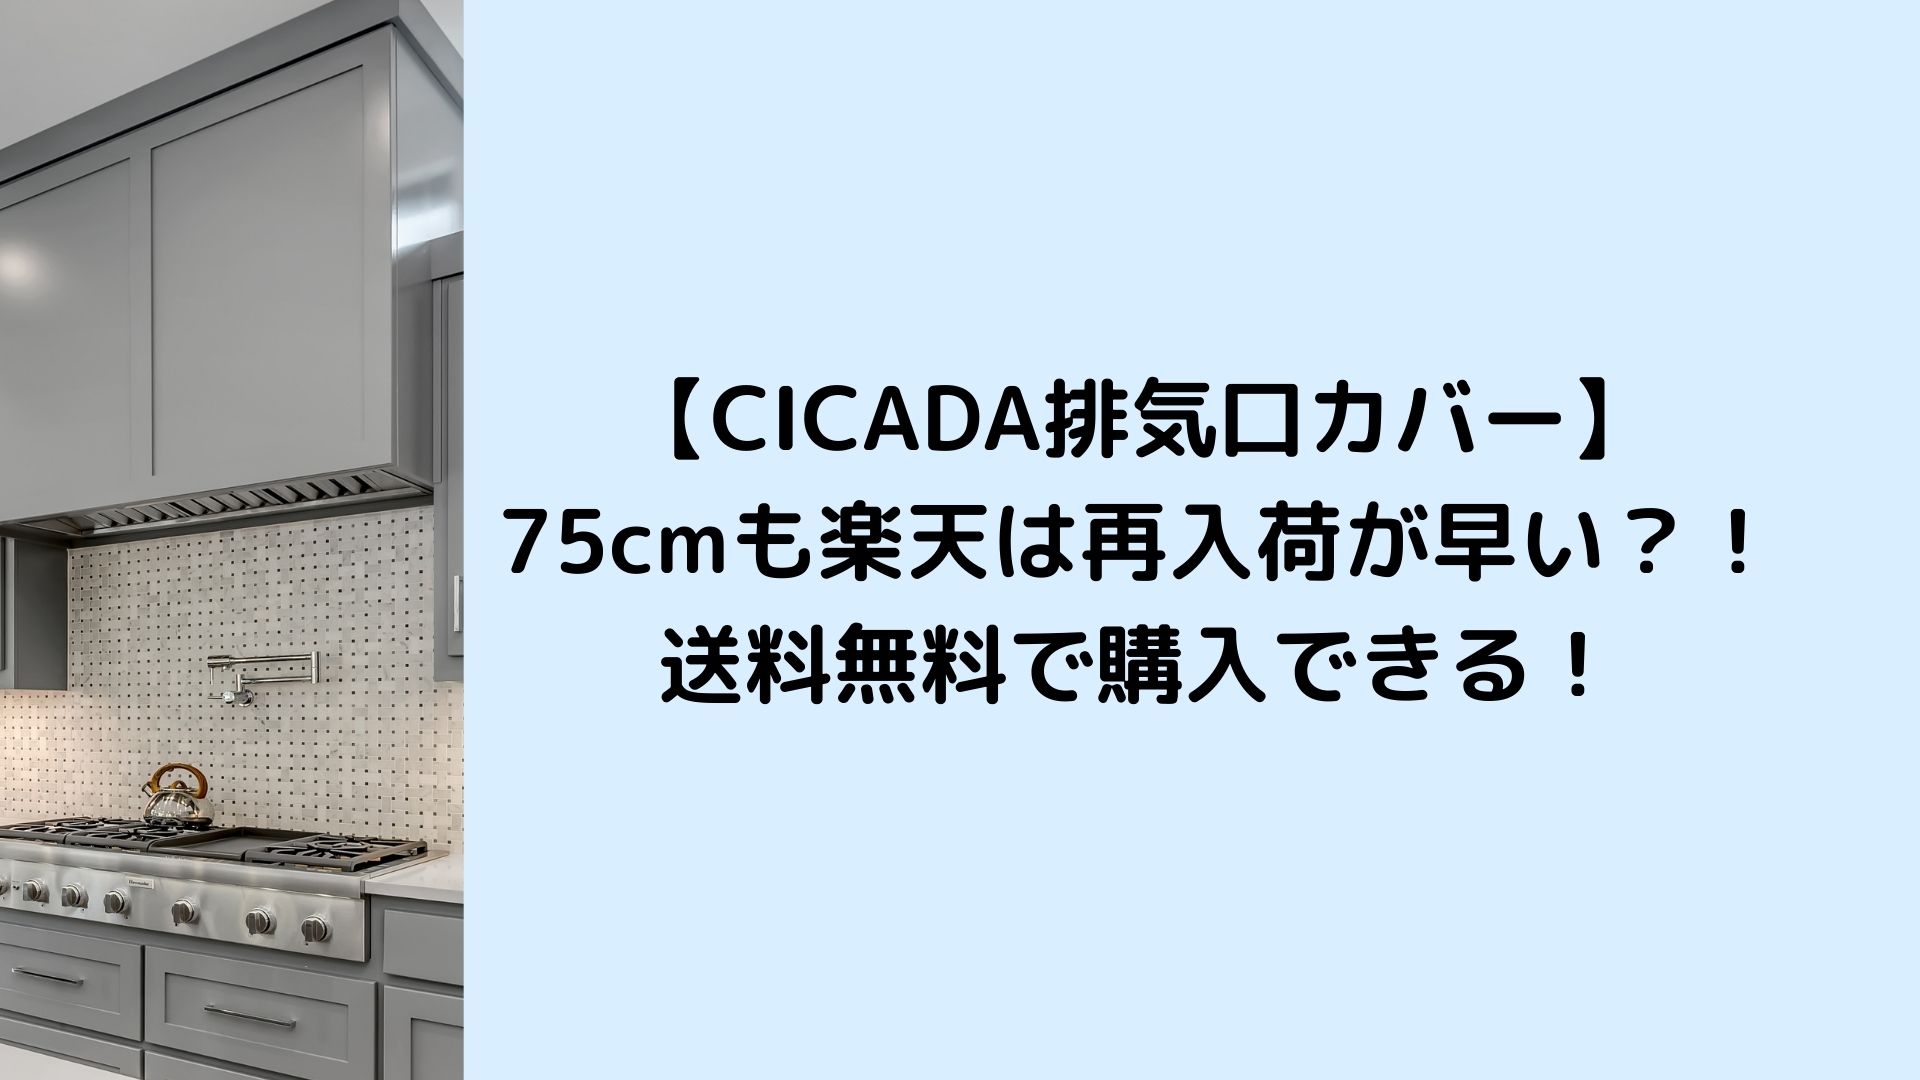 CICADA排気口カバー75cmも楽天は再入荷が早い？！送料無料で購入できる！ | ゆみはぴ